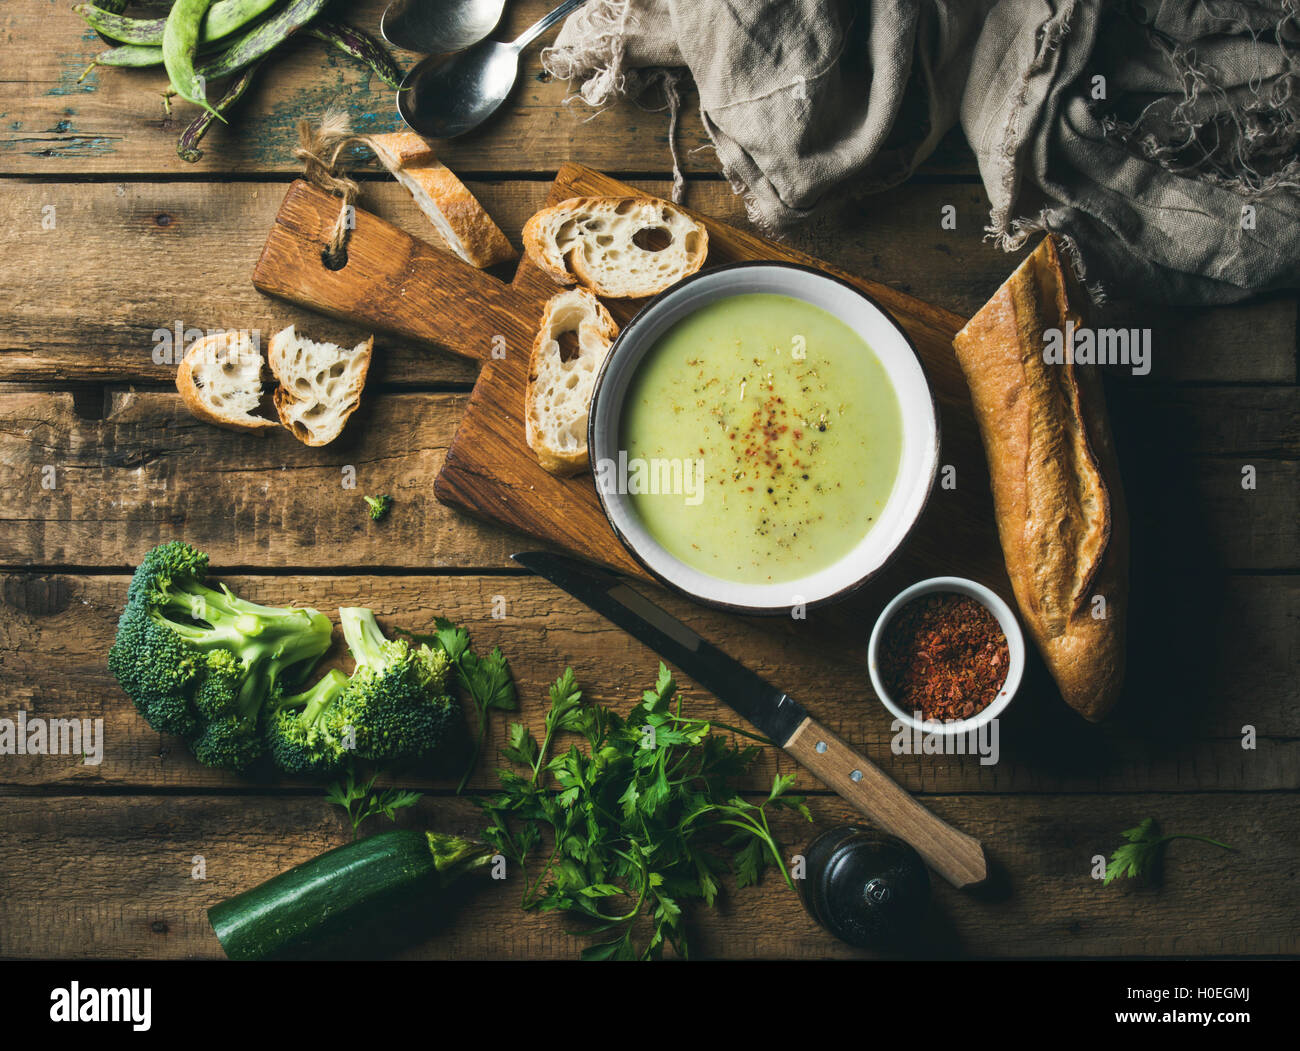 In casa il segnale di PEA, broccoli, zucchine minestra in crema in bianco ciotola con baguette fresca sulla tavola di legno su sfondo rustico, vista dall'alto, Foto Stock